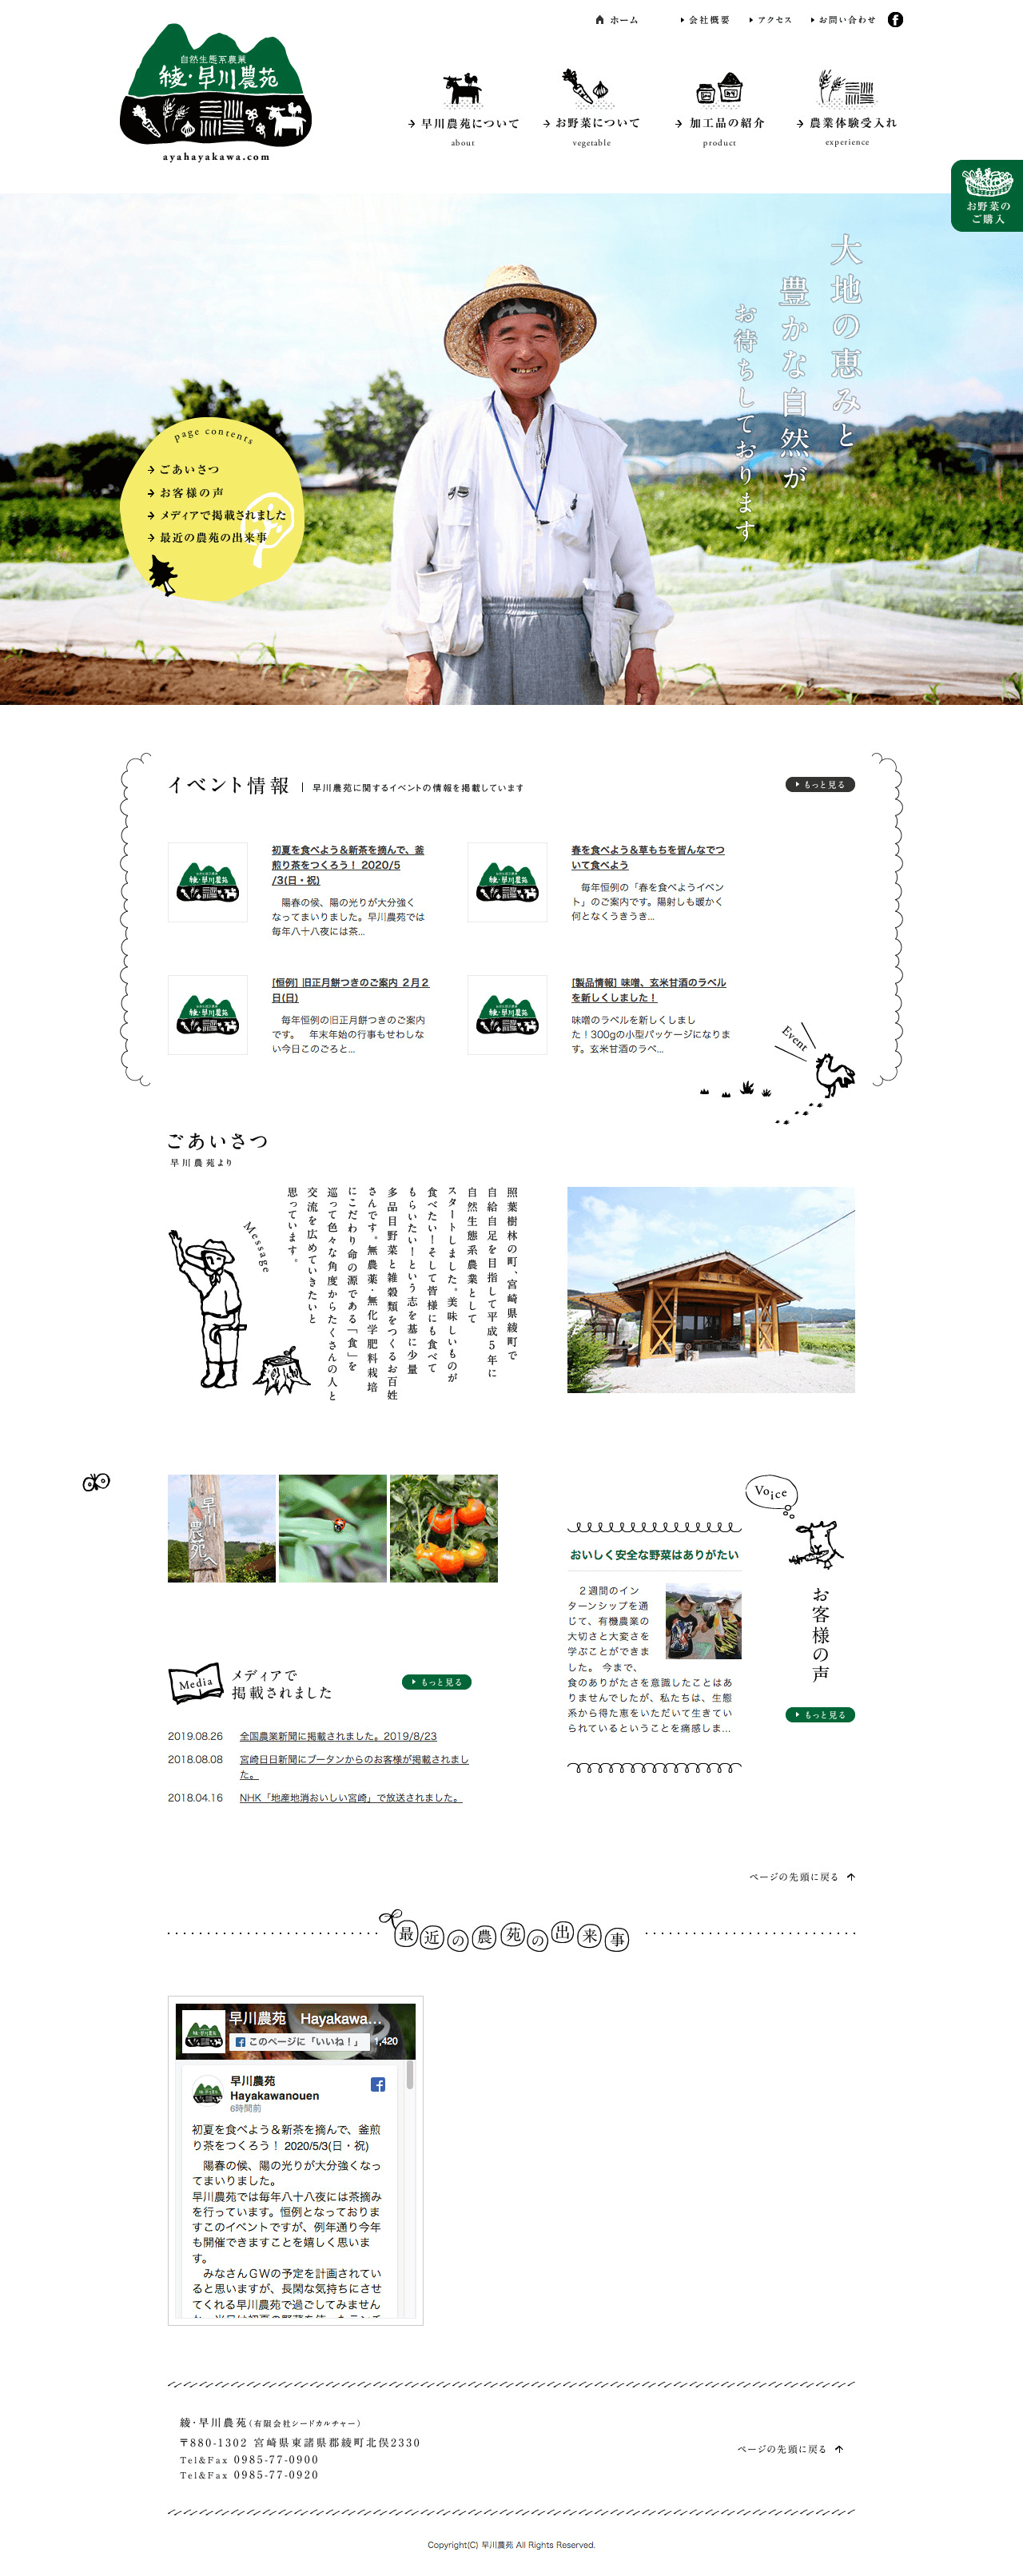 綾・早川農苑